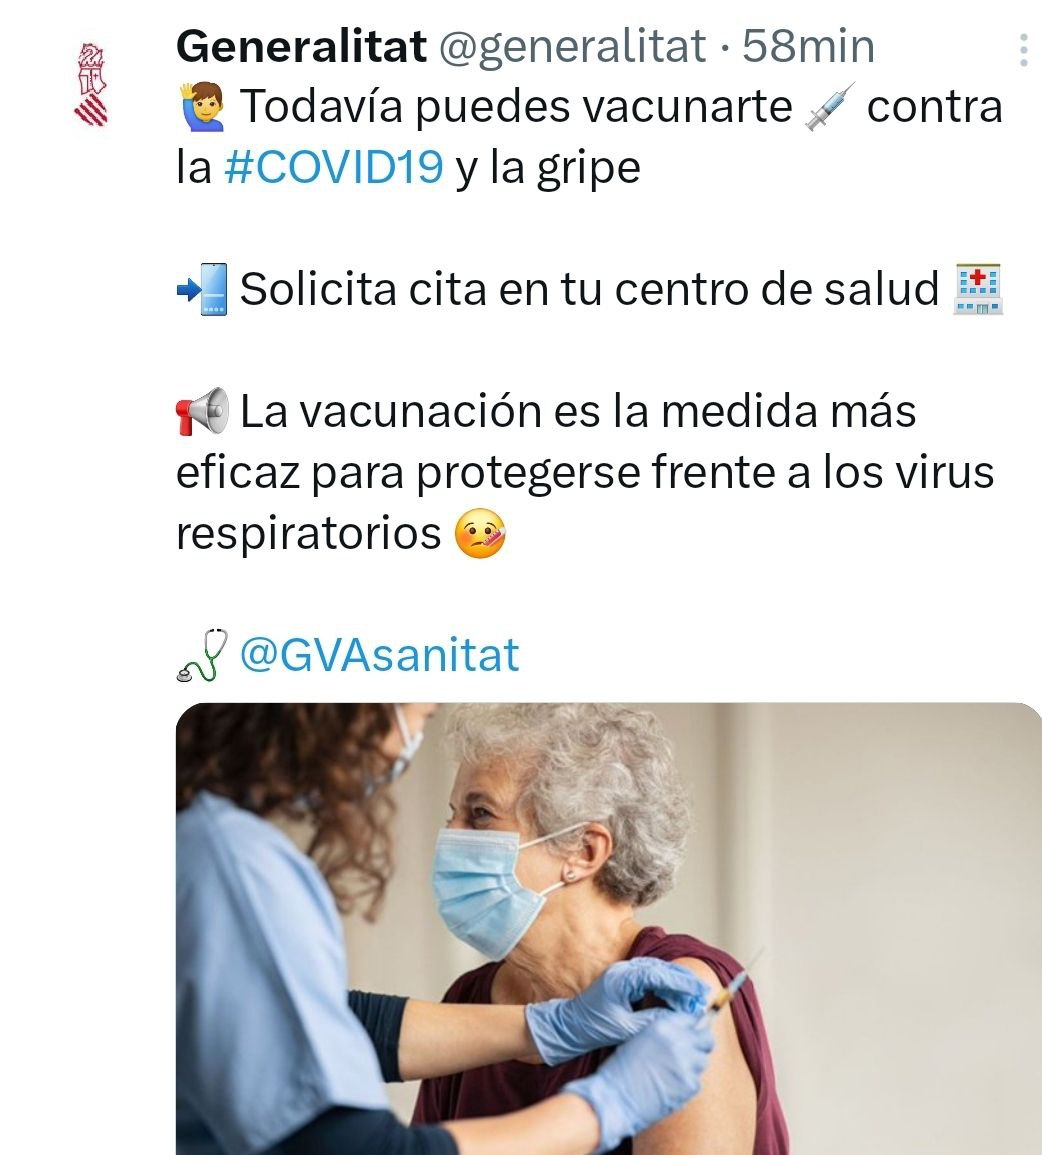 La Generalitat Valenciana, PP y VOX, anima a vacunarse contra el covid.
Es curioso. No hay un solo partido político que discrepe en esto y se atreva a cuestionar la seguridad y eficacia de las 'vacunas' experimentales del covid.
Comparte 

#YoNoMeVacuno